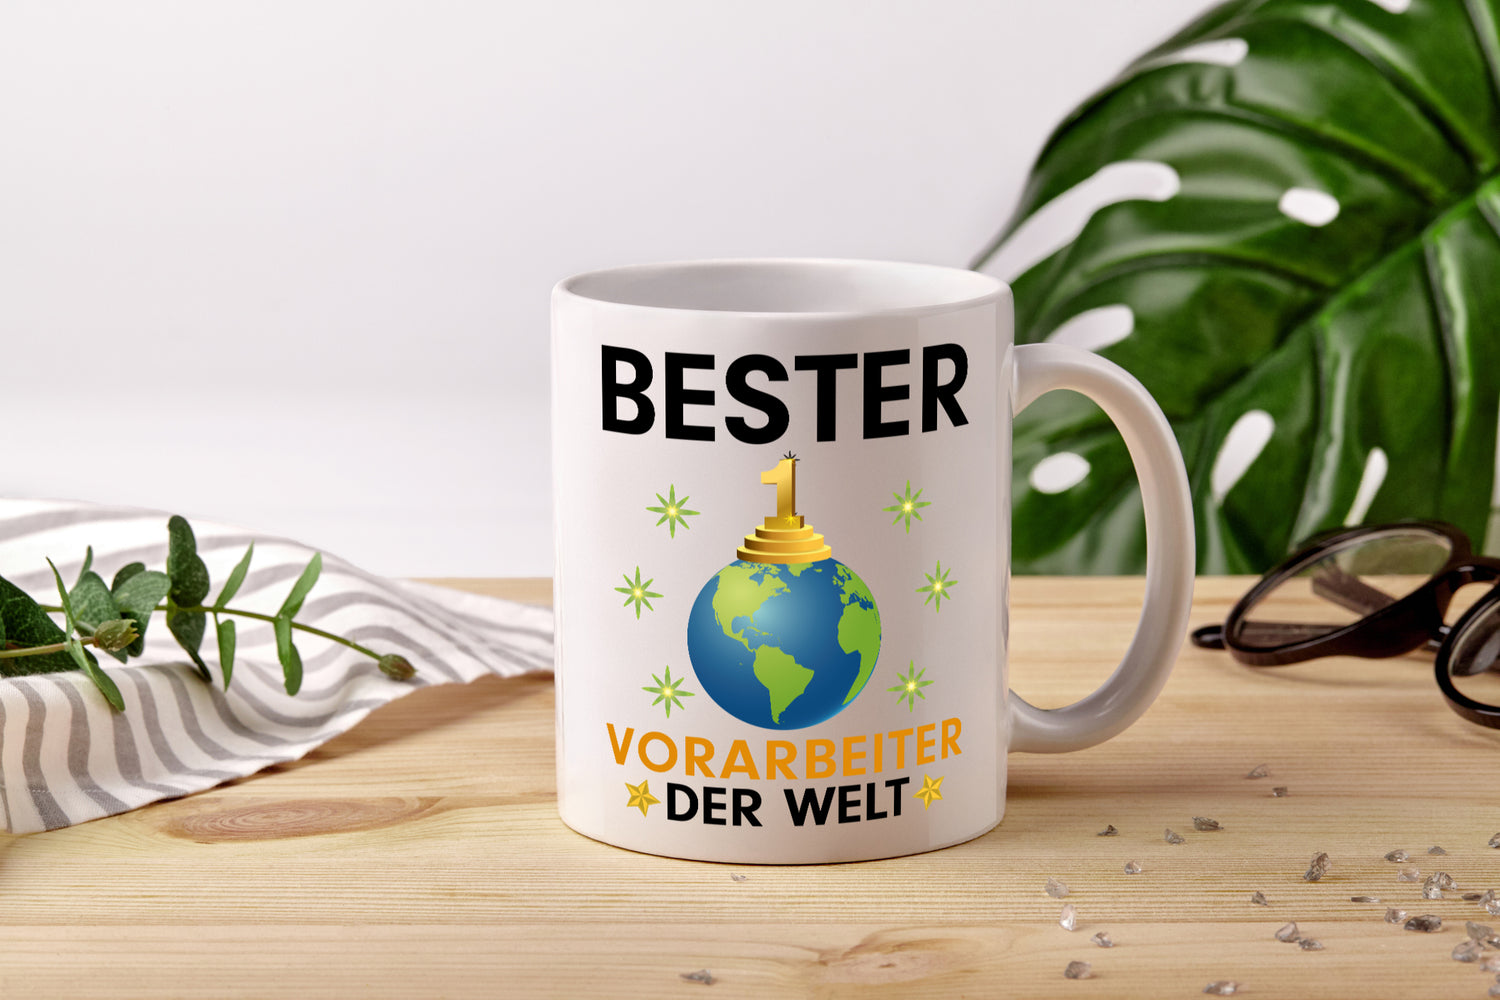 Welt Bester Vorarbeiter | Kollege | Teamleiter - Tasse Weiß - Kaffeetasse / Geschenk / Familie